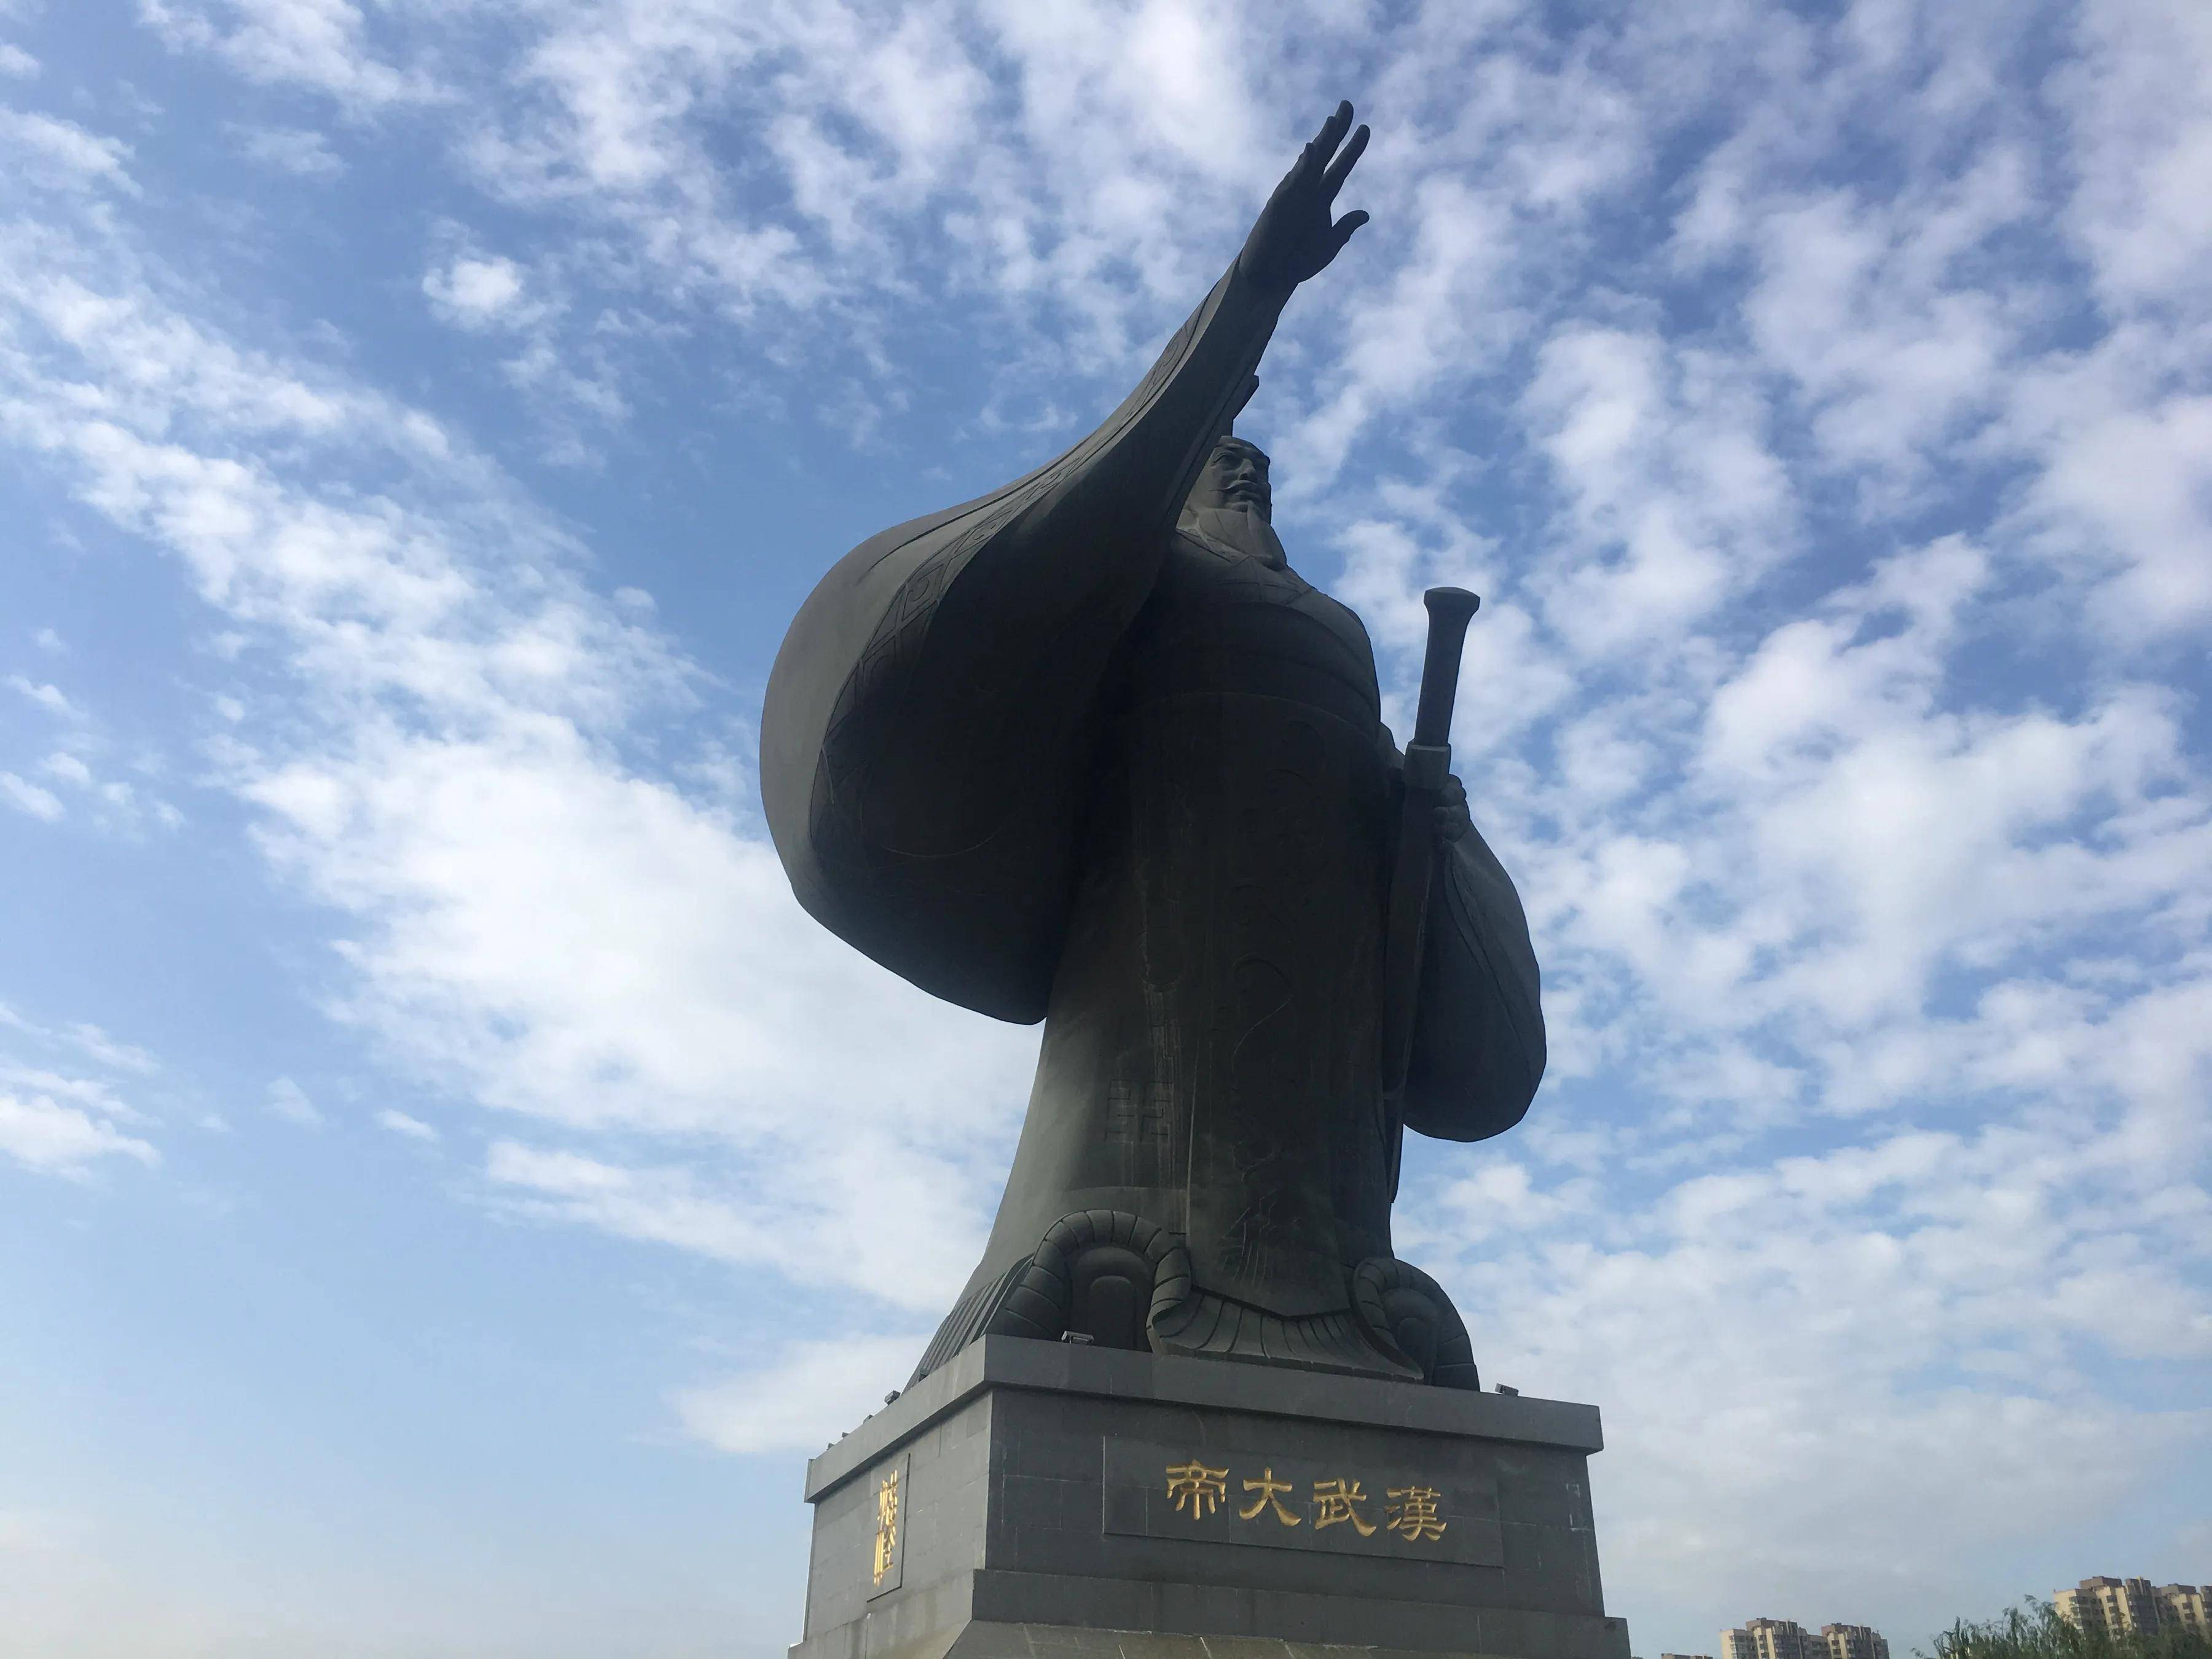 西安汉城湖国内最大皇帝雕像汉武大帝尽显强盛大国辉煌伟业